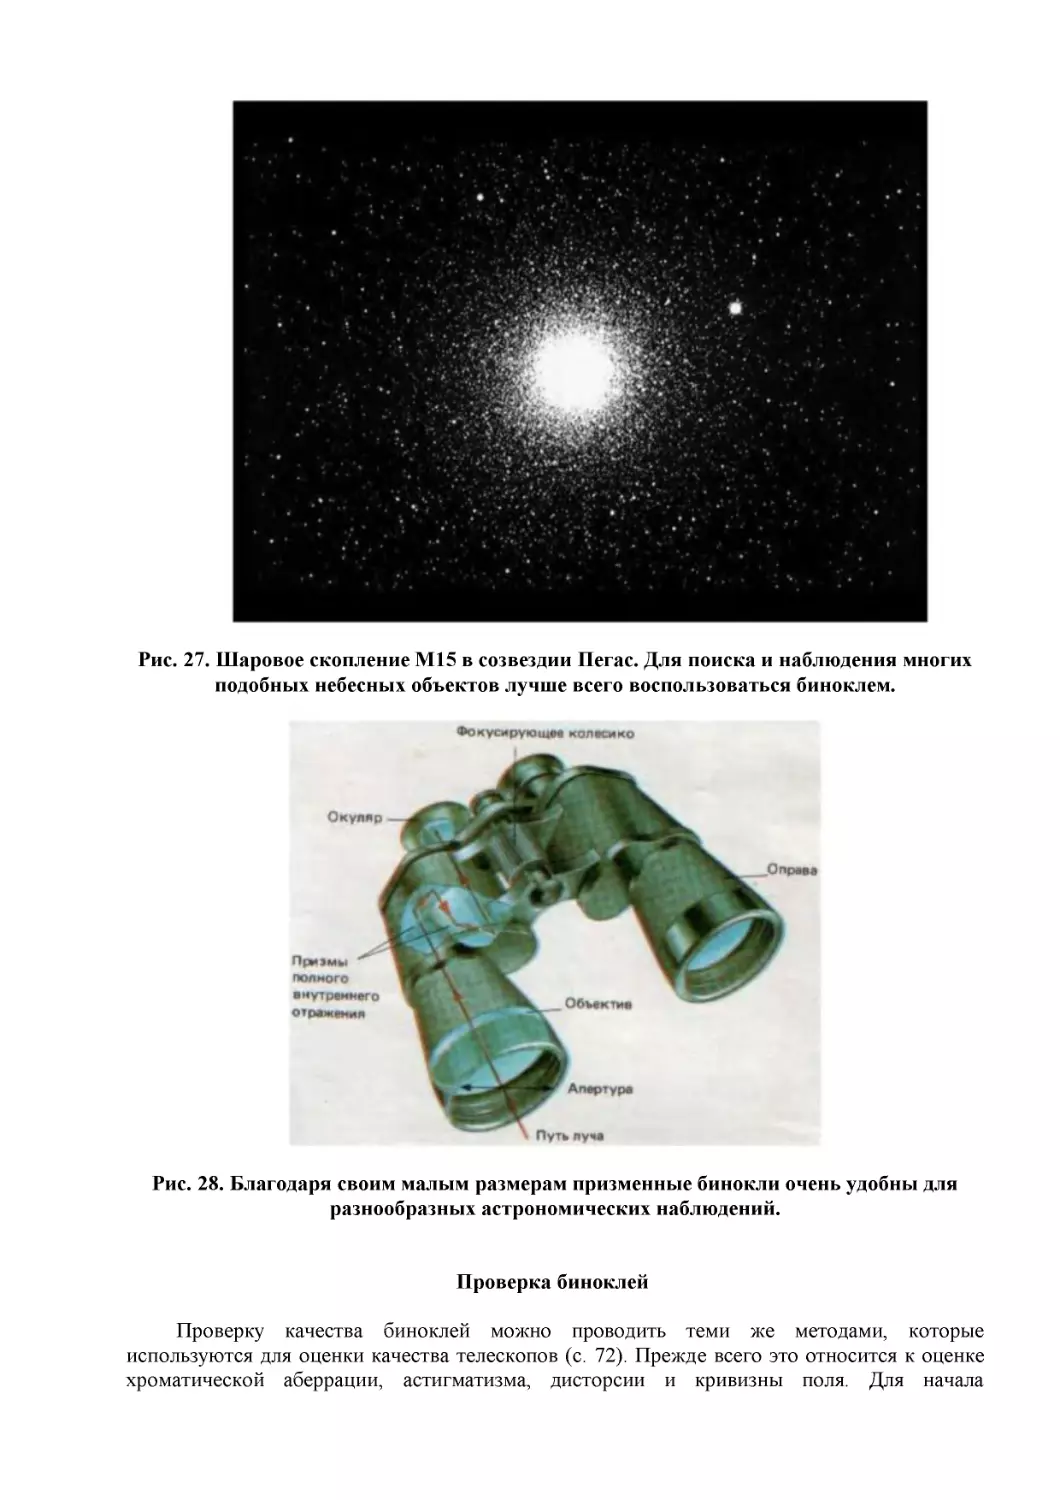 Рис. 27. Шаровое скопление М15 в созвездии Пегас. Для поиска и наблюдения многих подобных небесных объектов лучше всего воспользоваться биноклем.
Рис. 28. Благодаря своим малым размерам призменные бинокли очень удобны для разнообразных астрономических наблюдений.
Проверка биноклей